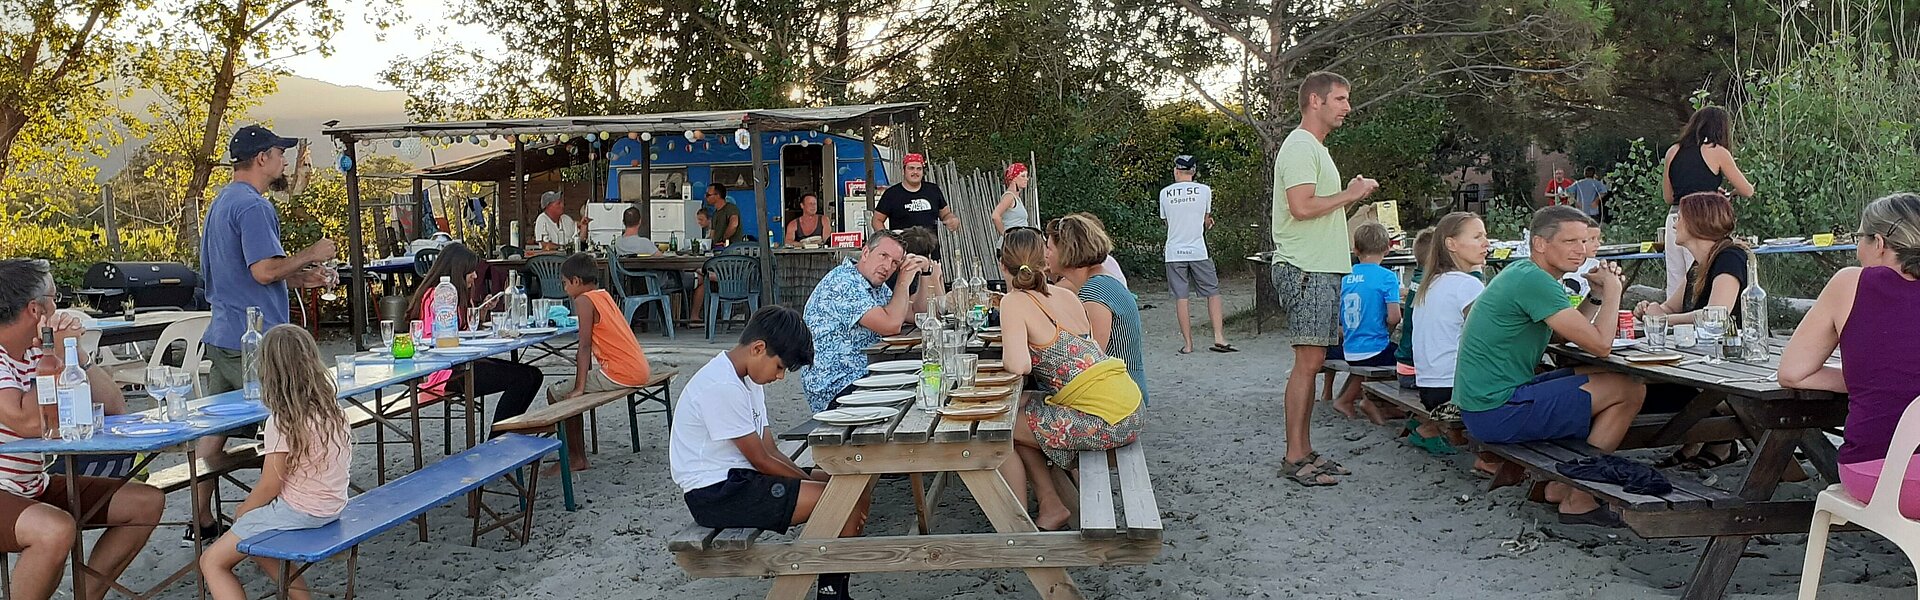 Familien essen gemeinsam am Strand